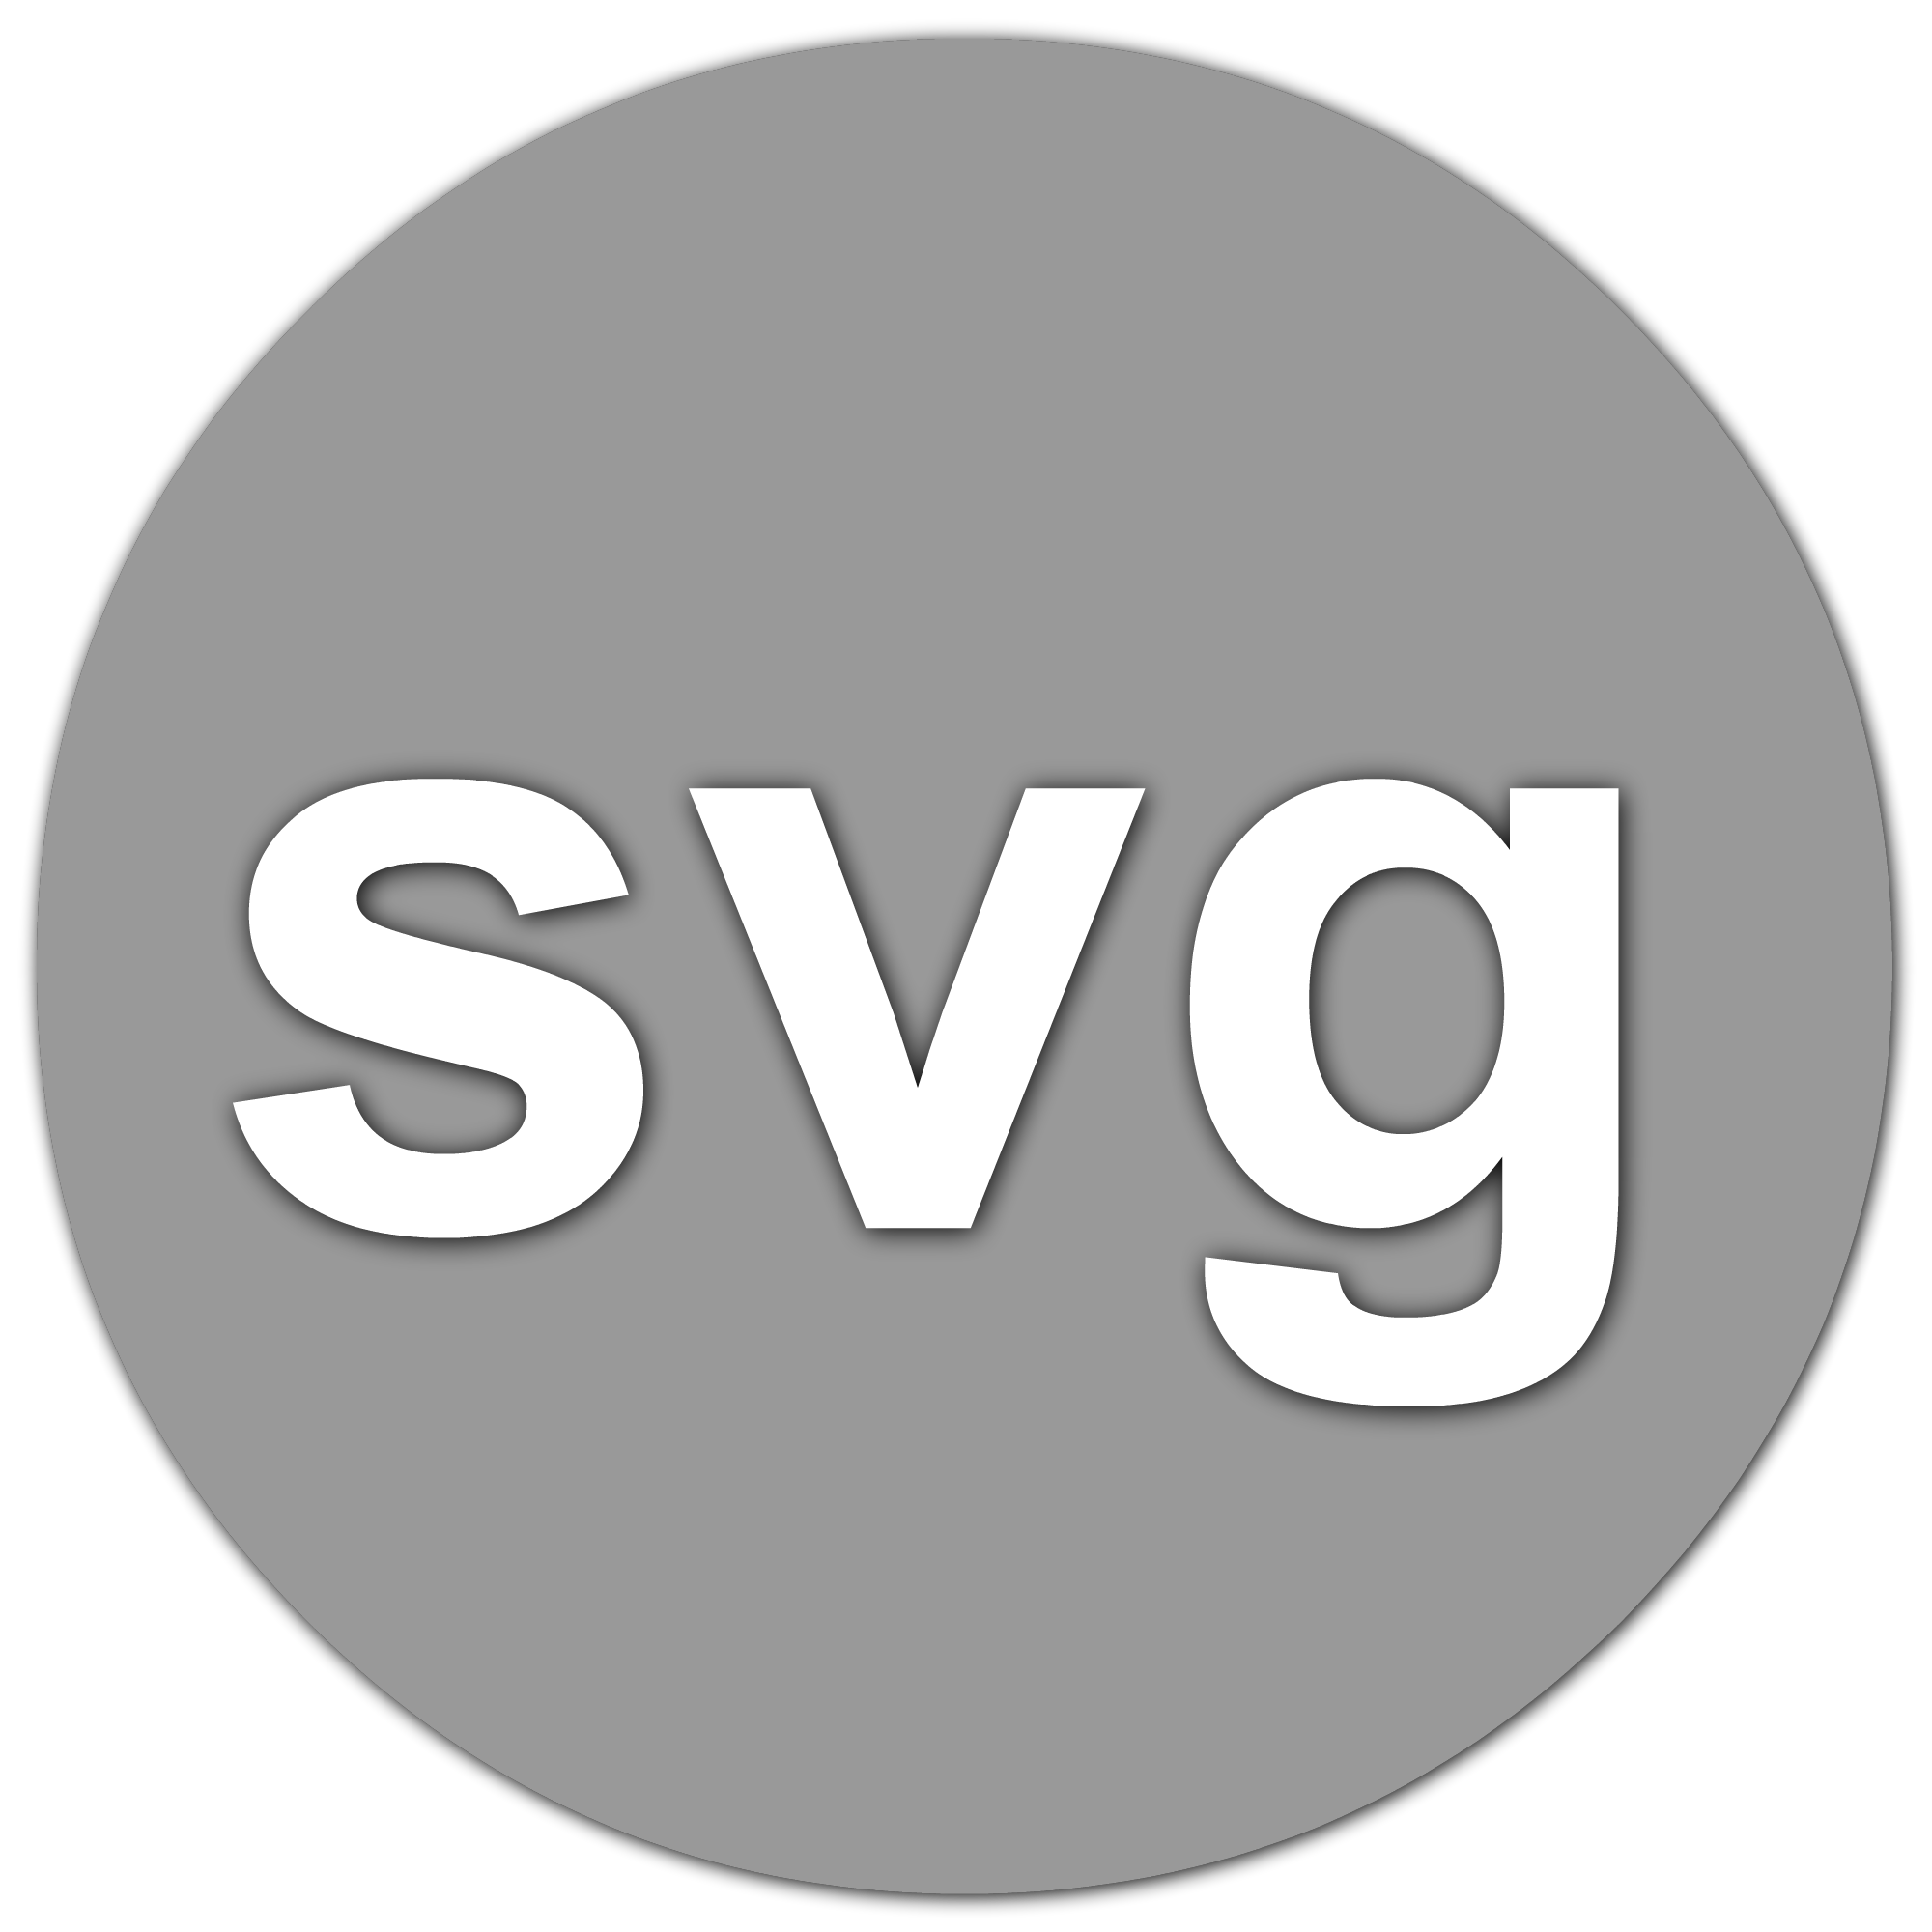 Загрузить svg. Svg файл. Изображения в формате svg. Svg фото. Расширение svg.